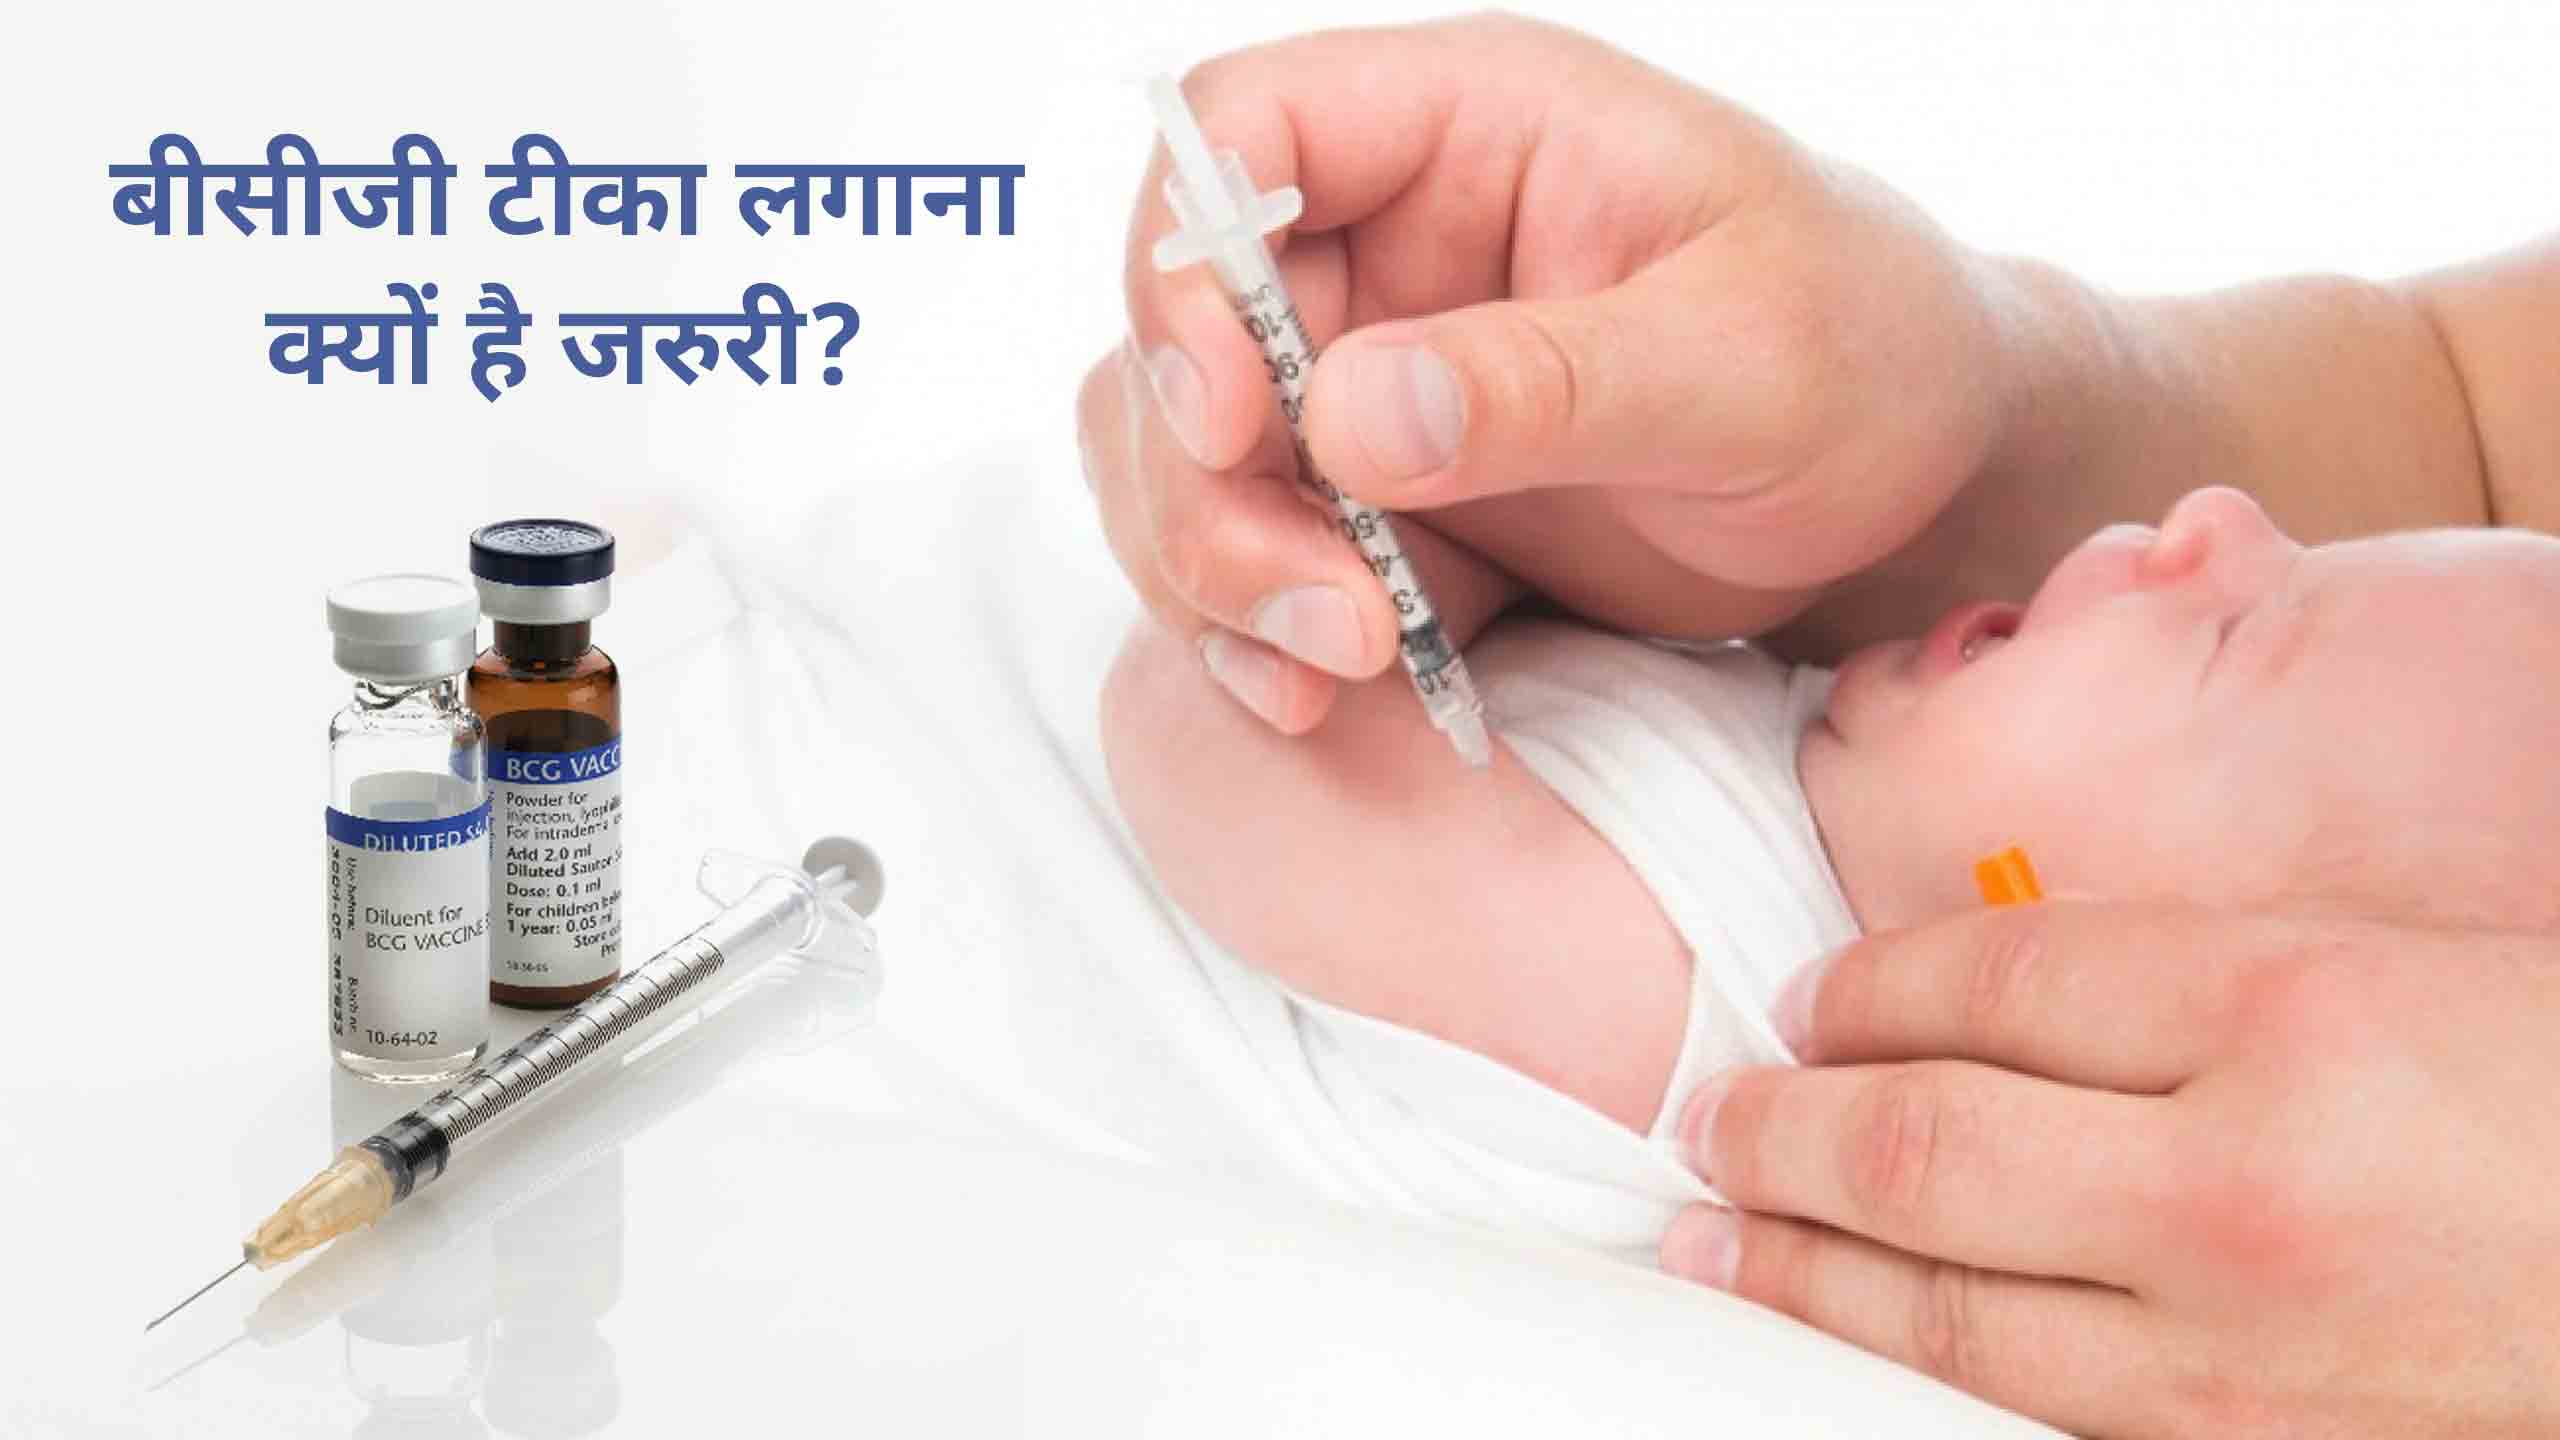 BCG Vaccine in Hindi: इस टीके से अपने बच्चे को रखें टीबी से हमेशा सुरक्षित